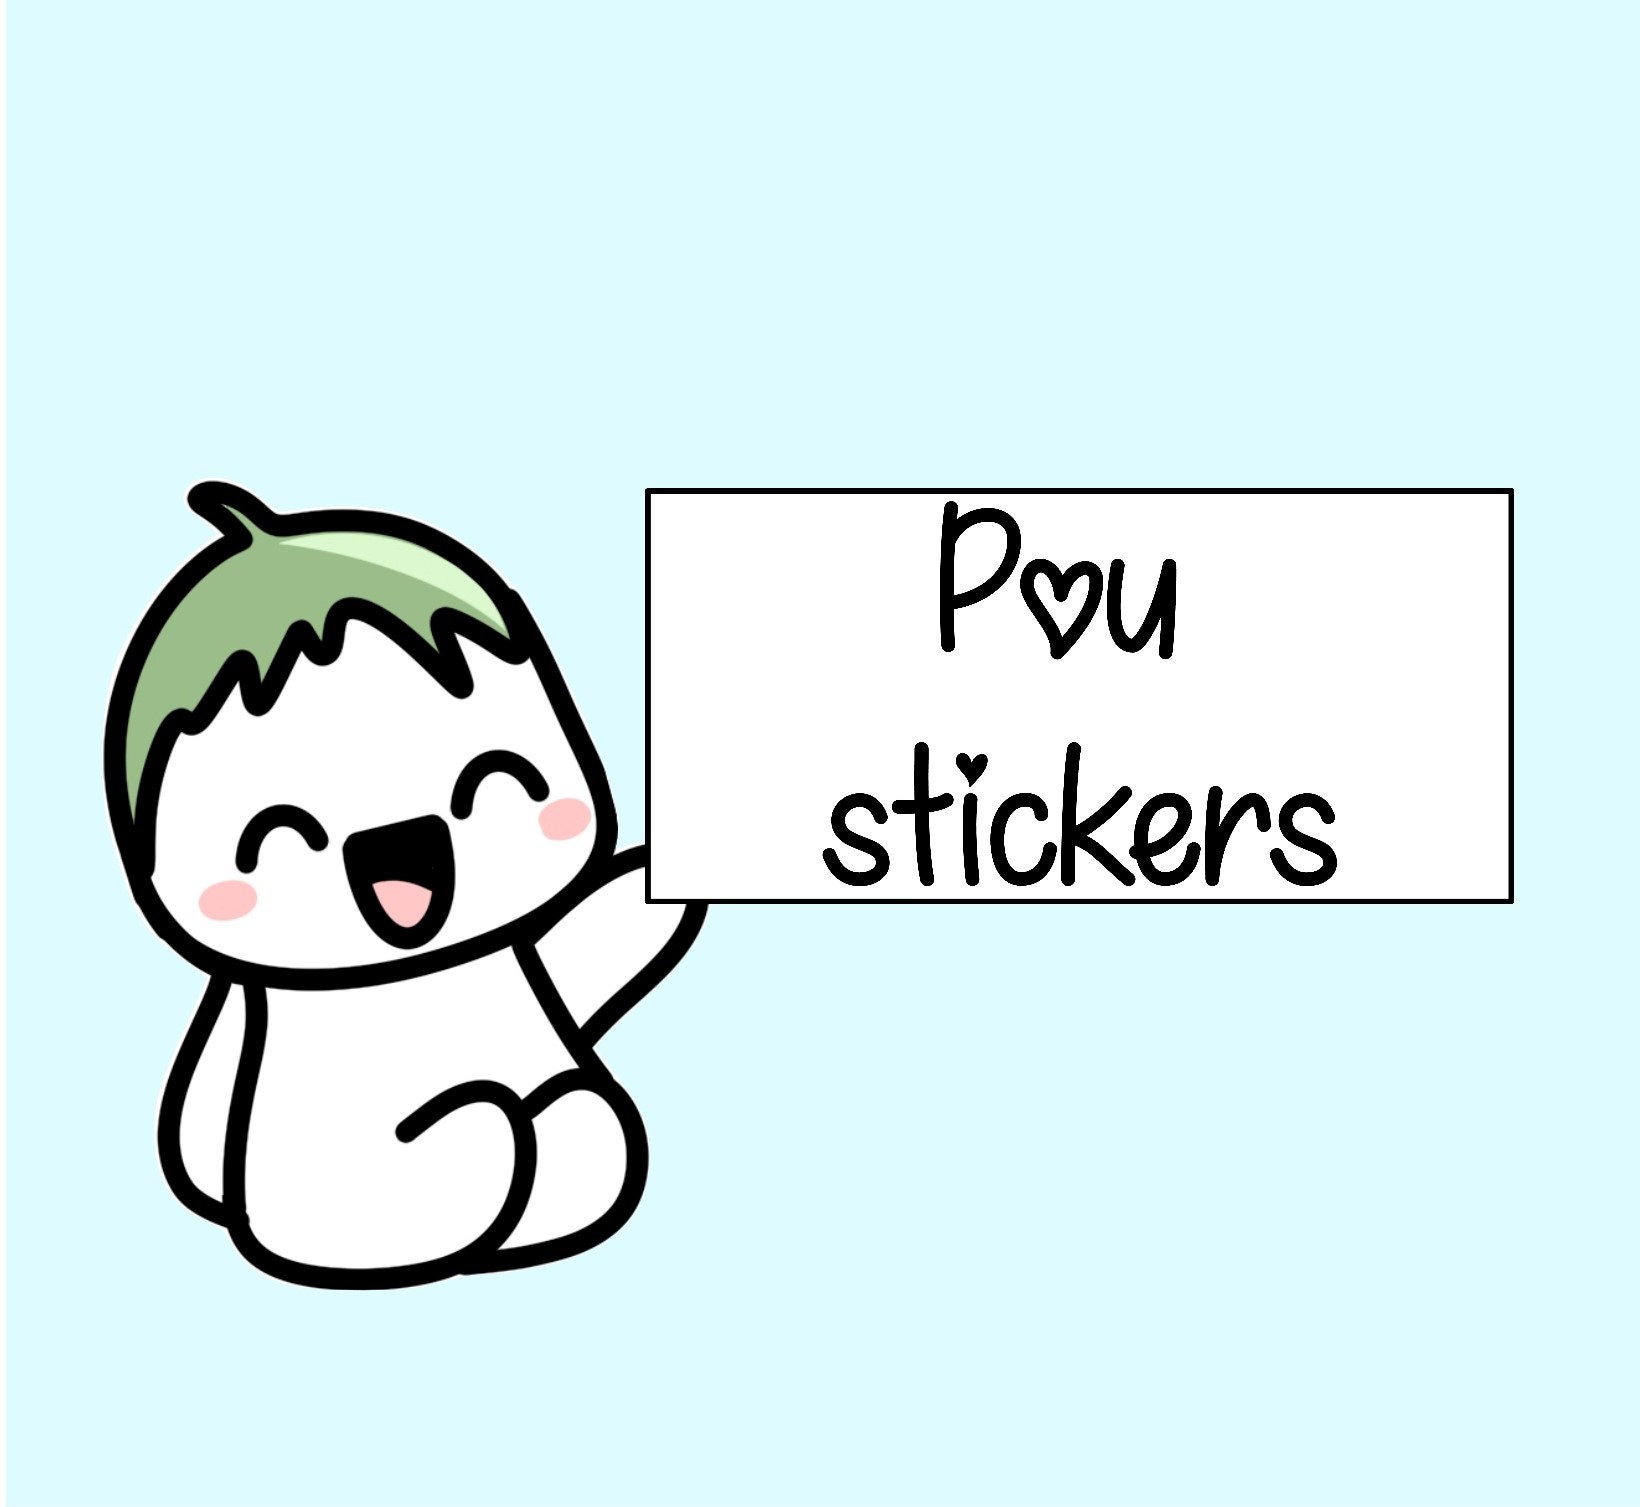 Pou Sad Sticker by Pintoranimation